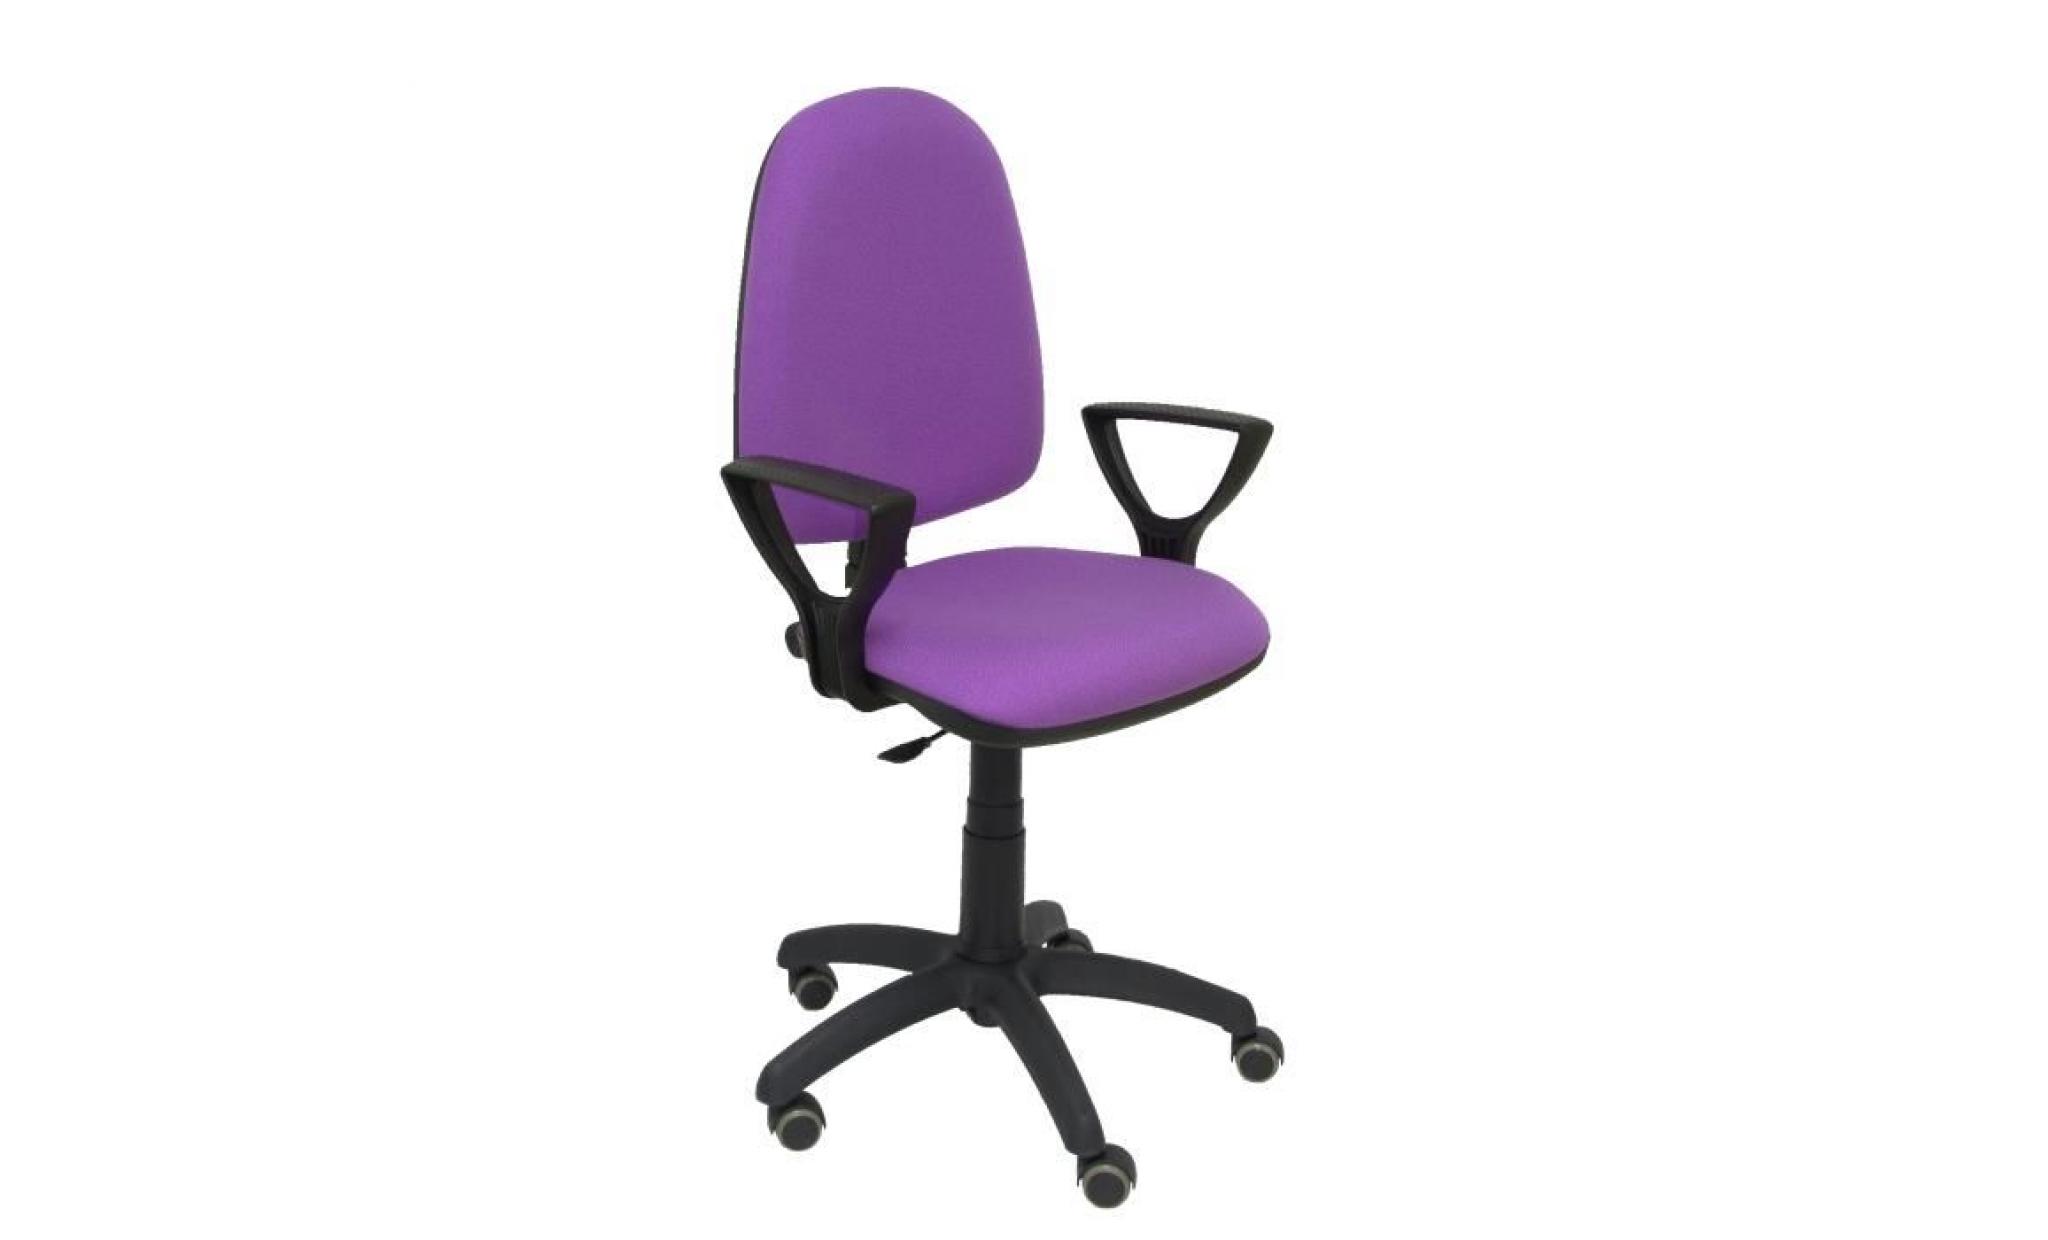 modèle 04cpbali82bgolfrp chaise de bureau ergonomique avec mécanisme de contact permanent, réglable en hauteur et roues de parquet pas cher